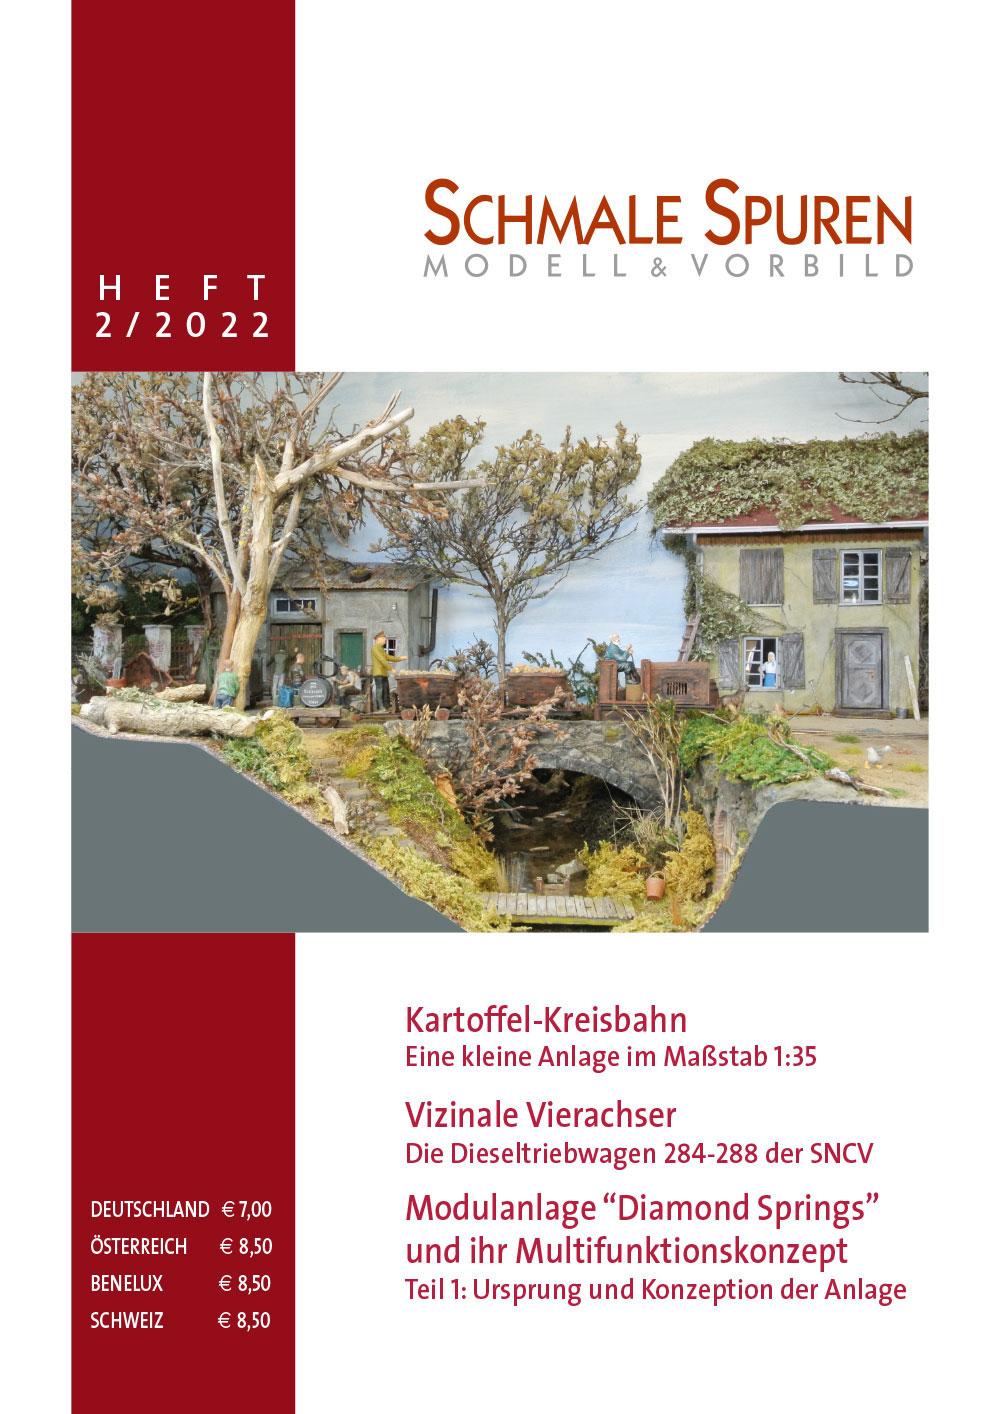 Heft 2/2017 Schmale Spuren Heft NEUZUSTAND!!! 